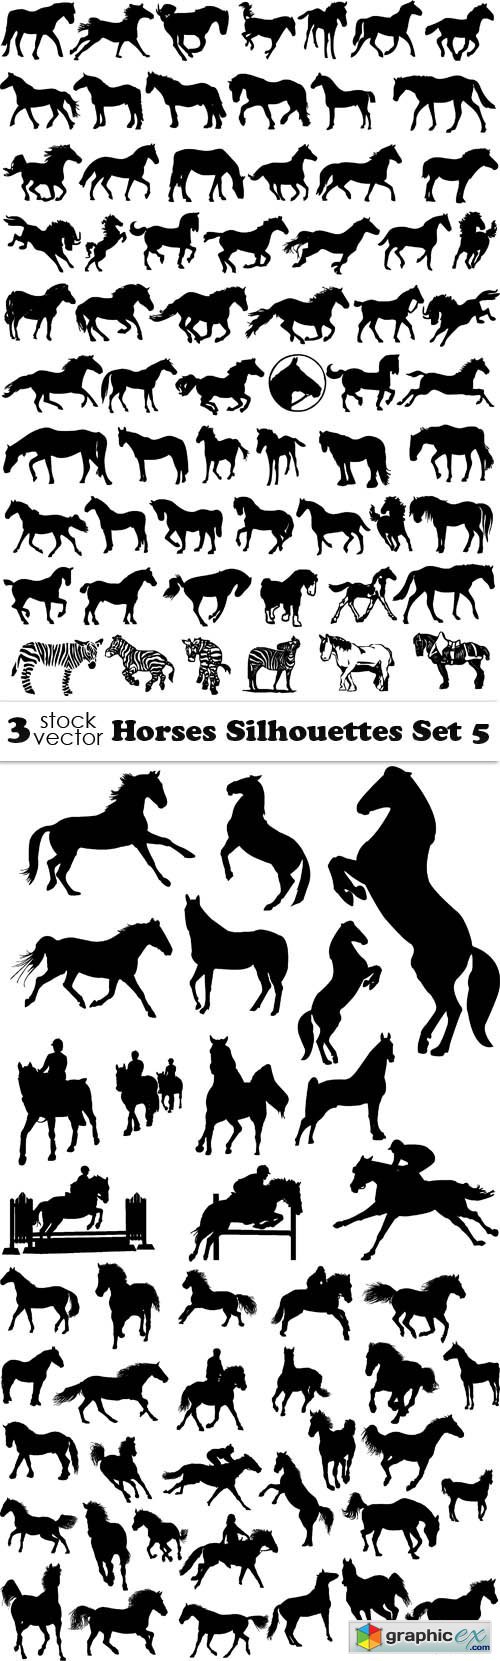 Vectors - Horses Silhouettes Set 5